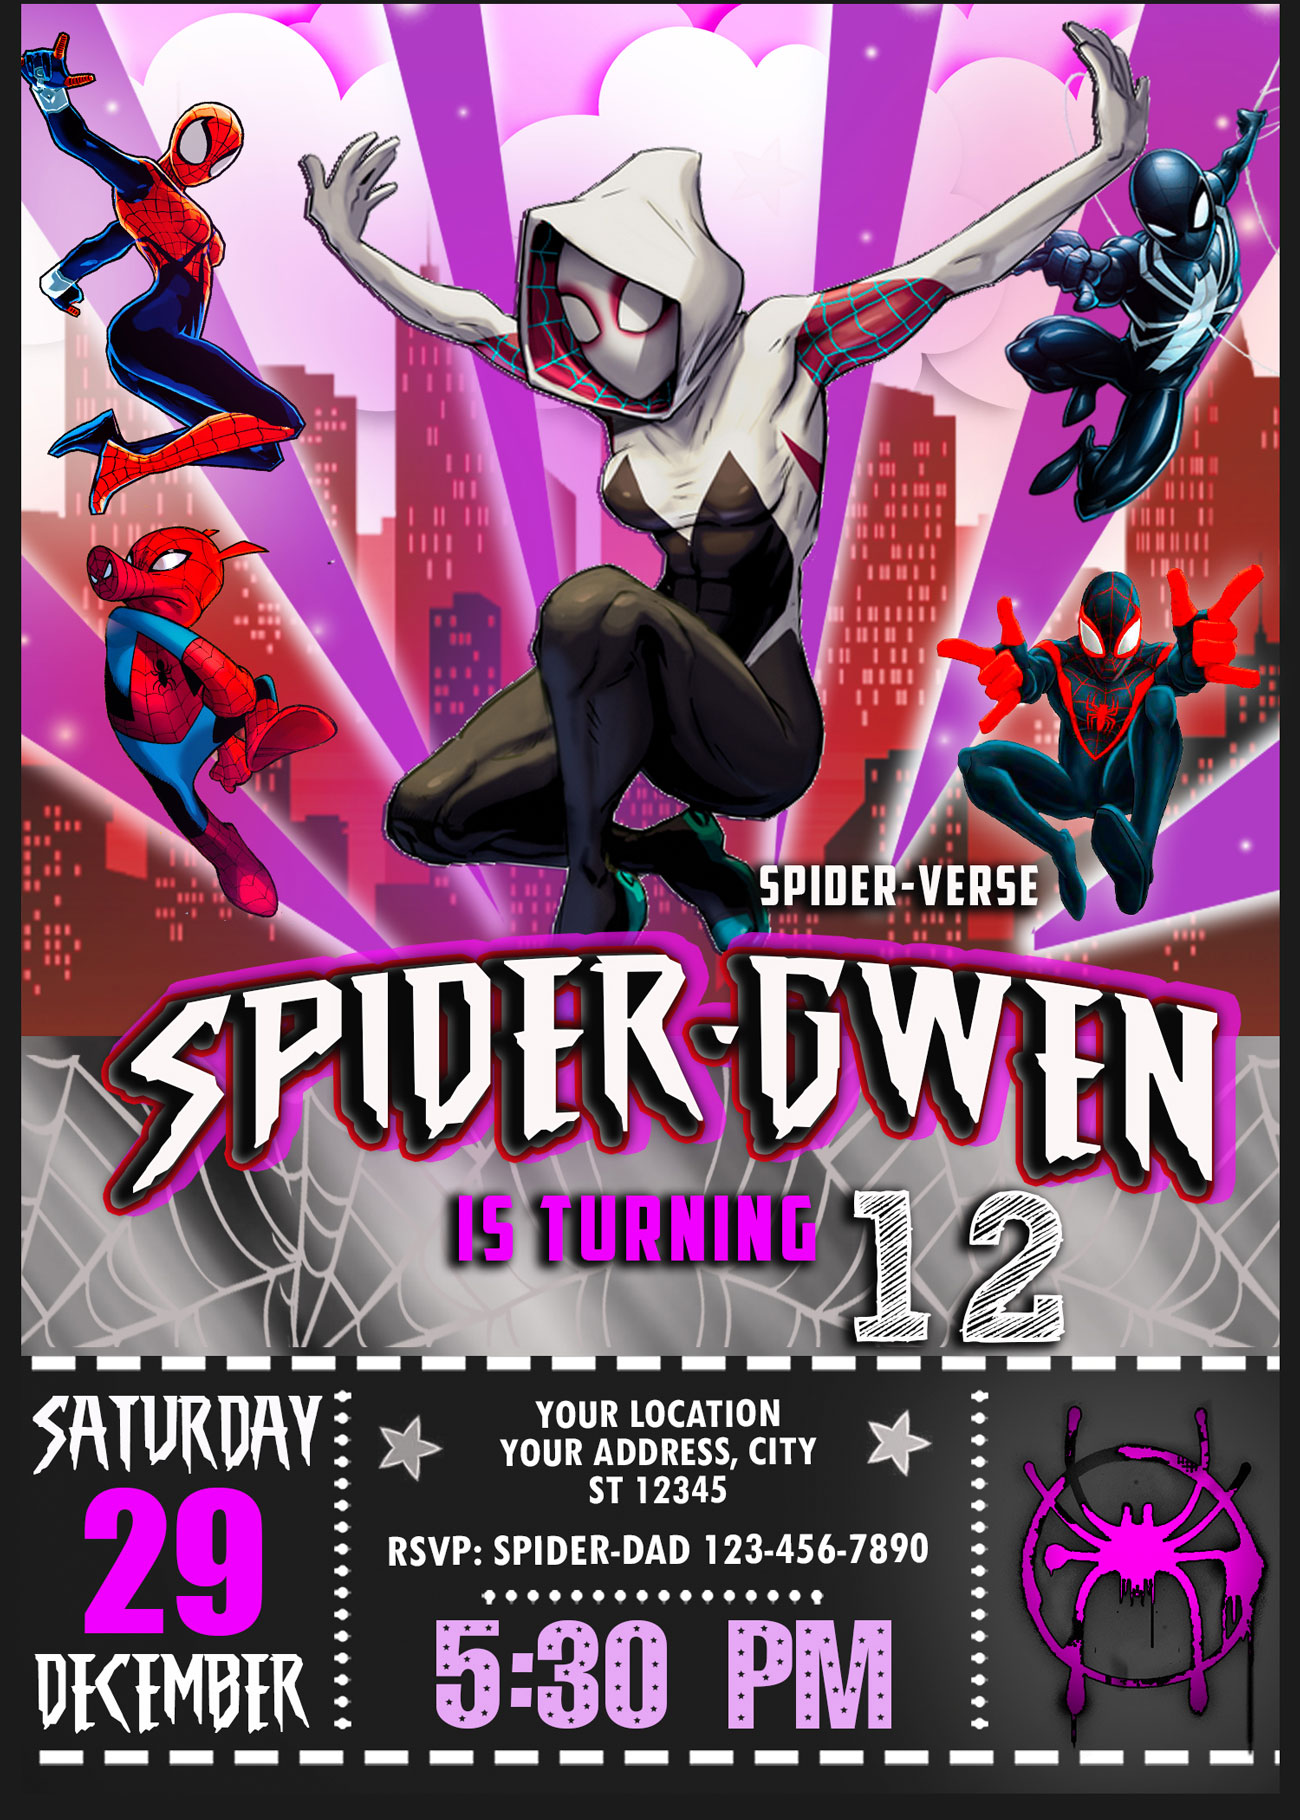 Spider-gwen birthday invitation